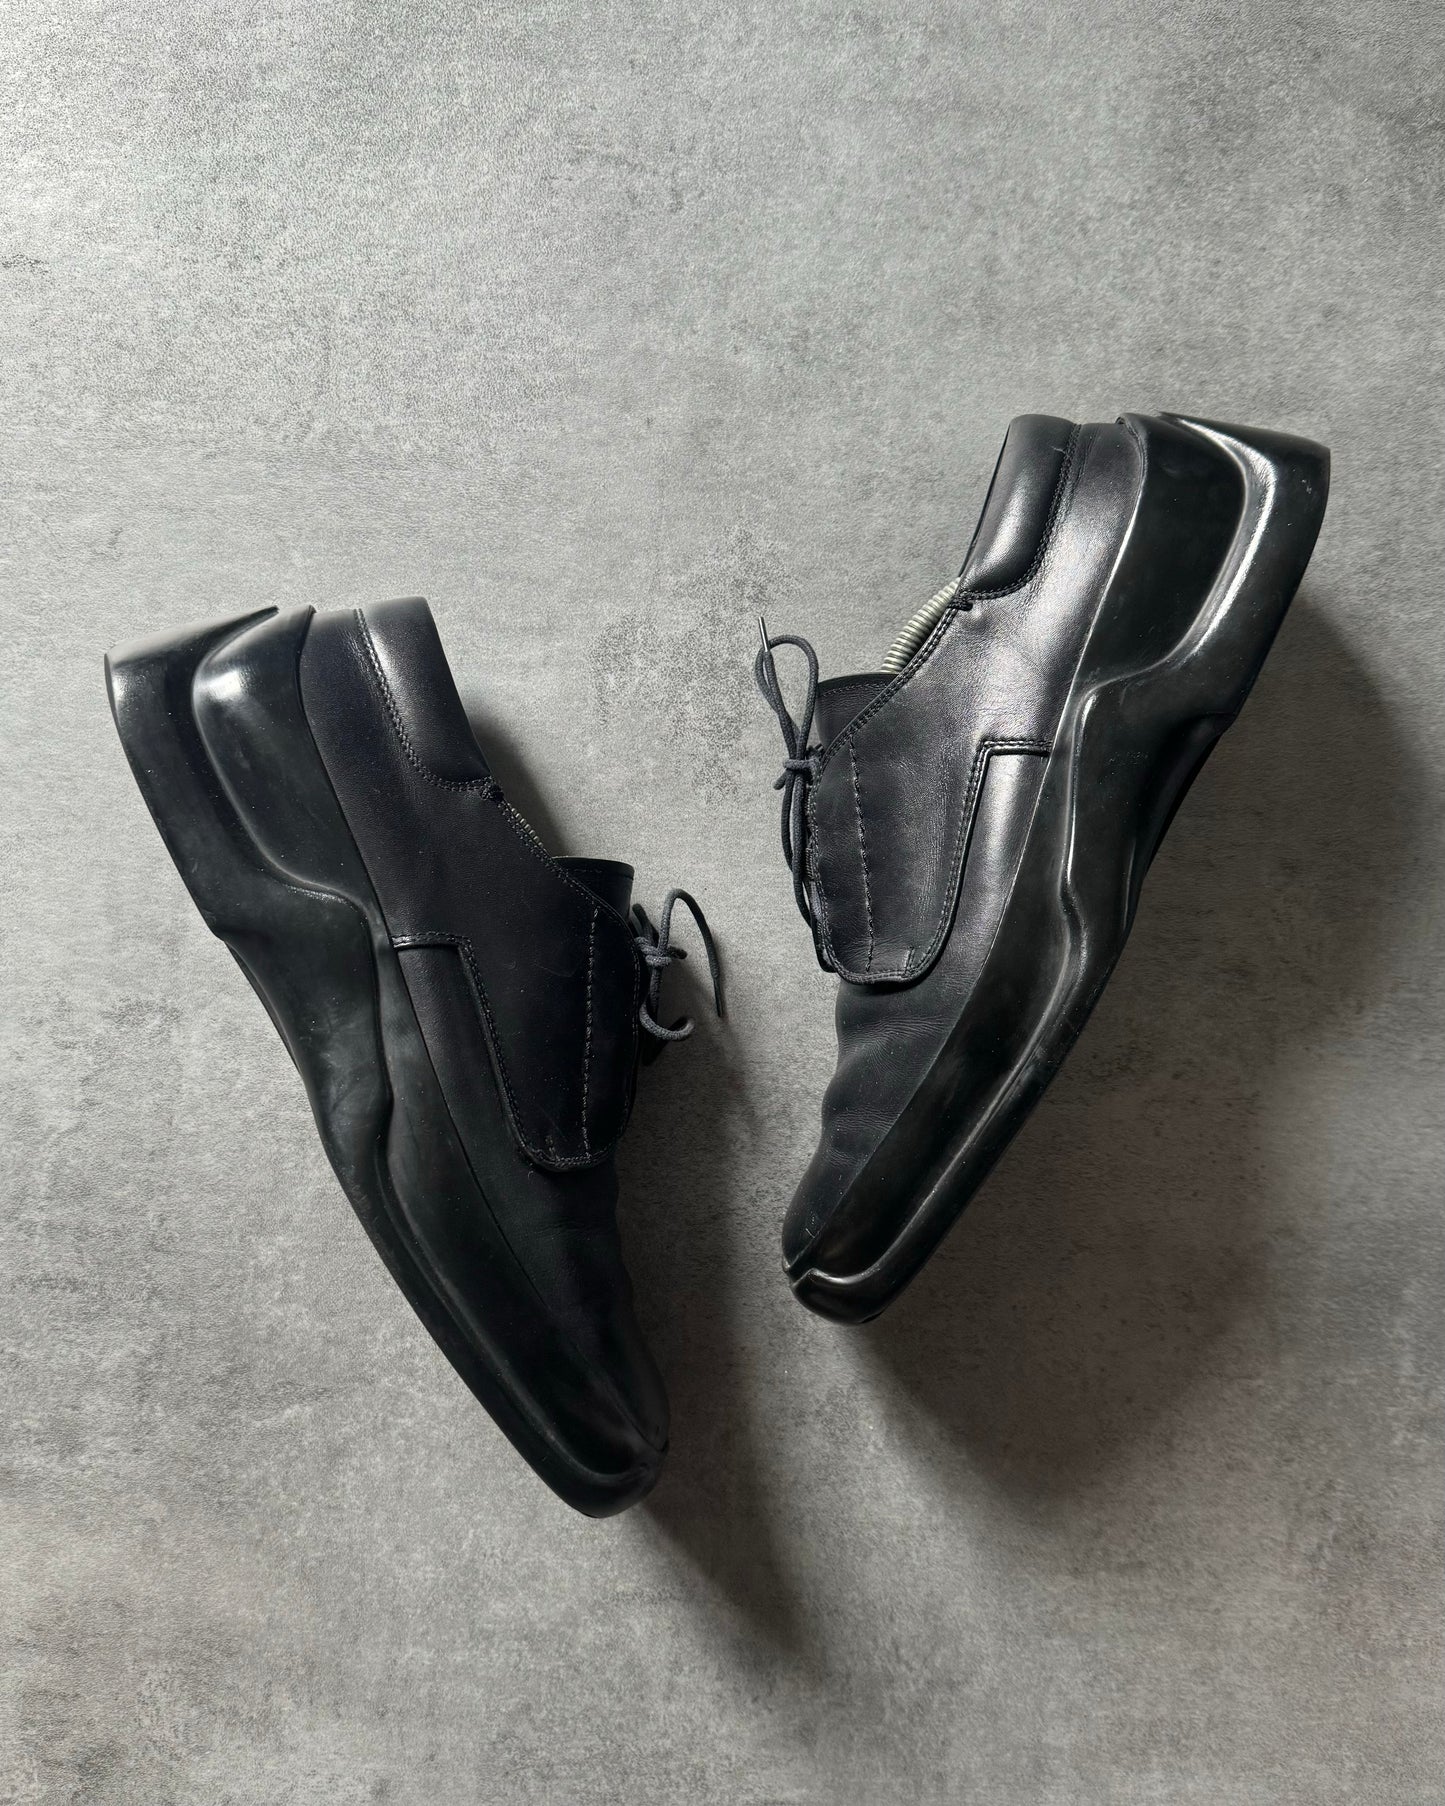 FW1999 Prada Black Low Premium Leather Boots (43) - 8